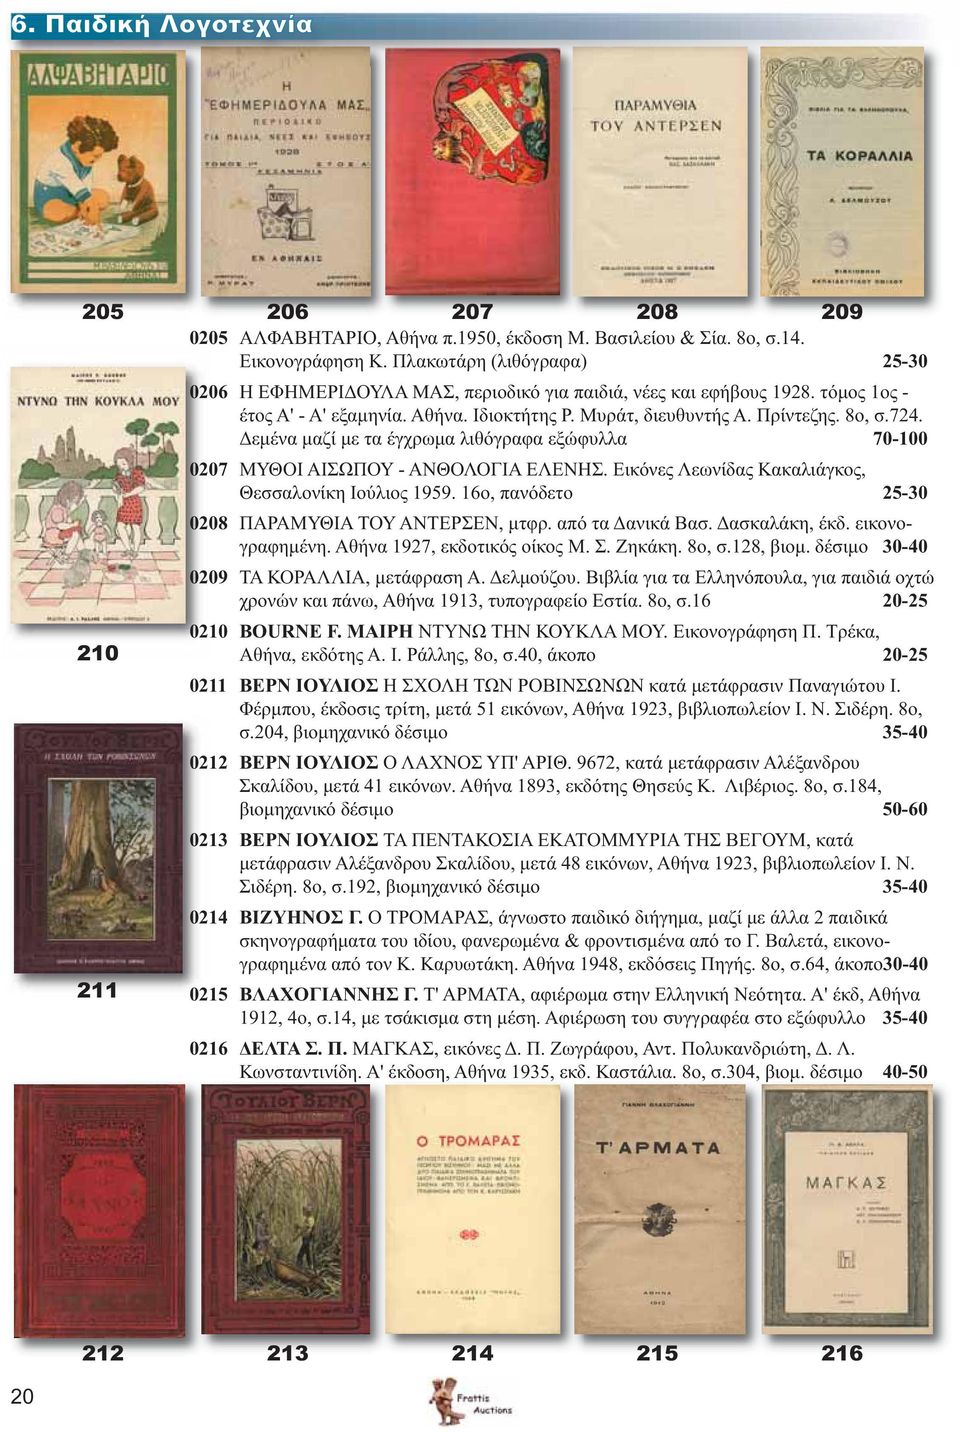 Δεμένα μαζί με τα έγχρωμα λιθόγραφα εξώφυλλα 70-100 0207 ΜΥΘΟΙ ΑΙΣΩΠΟΥ - ΑΝΘΟΛΟΓΙΑ ΕΛΕΝΗΣ. Εικόνες Λεωνίδας Κακαλιάγκος, Θεσσαλονίκη Ιούλιος 1959.